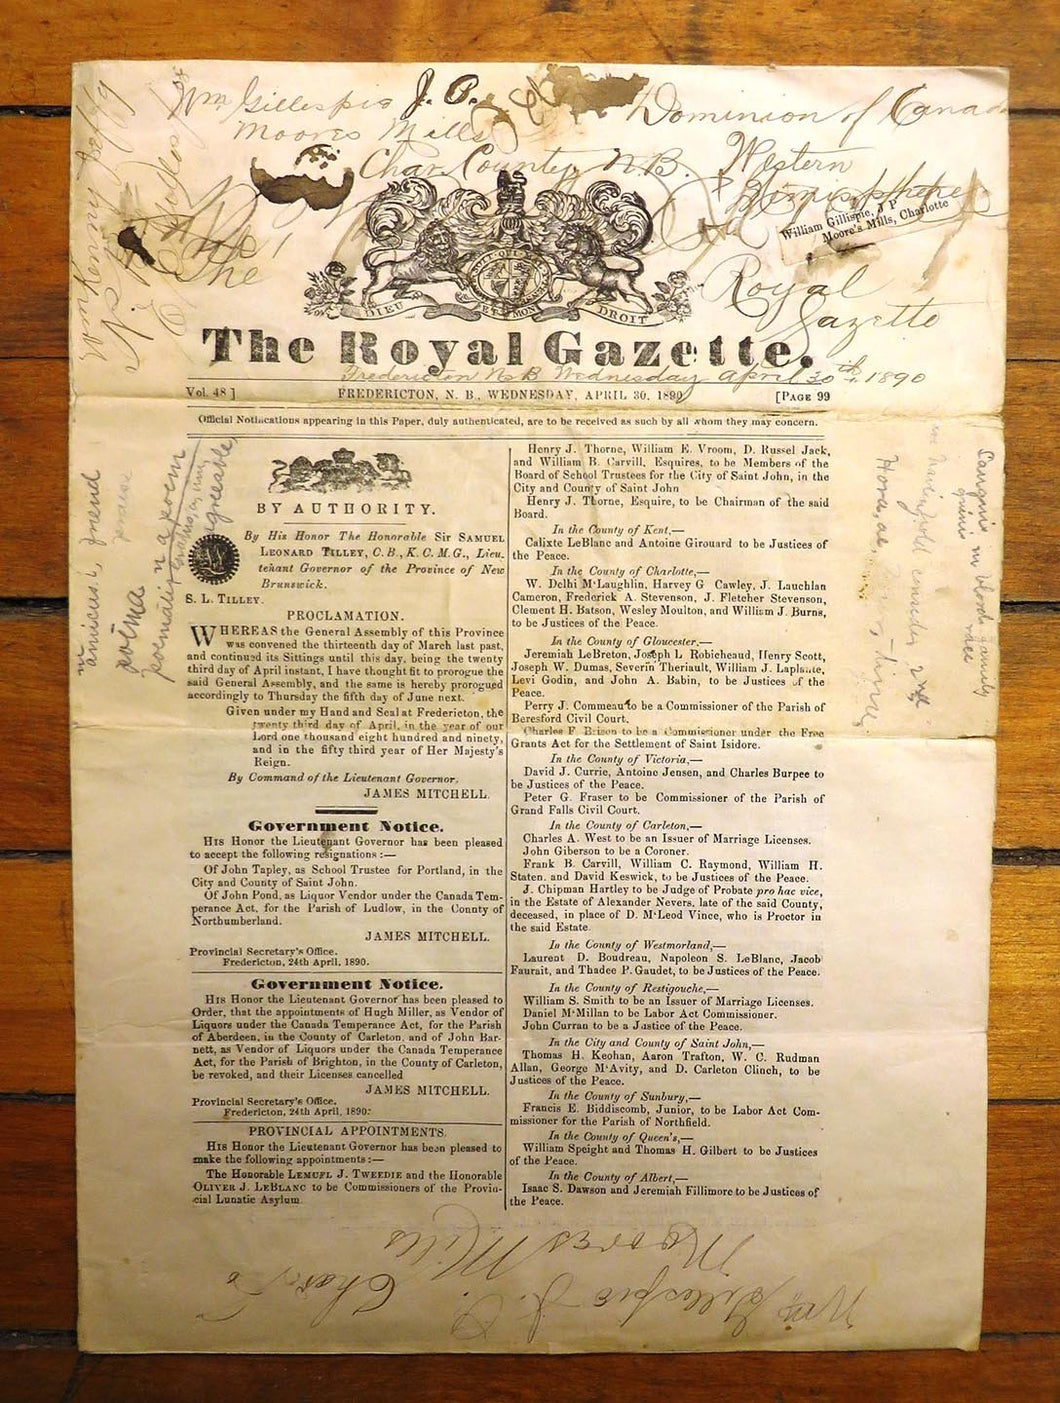 The Royal Gazette, Fredericton, NB, April 30, 1890